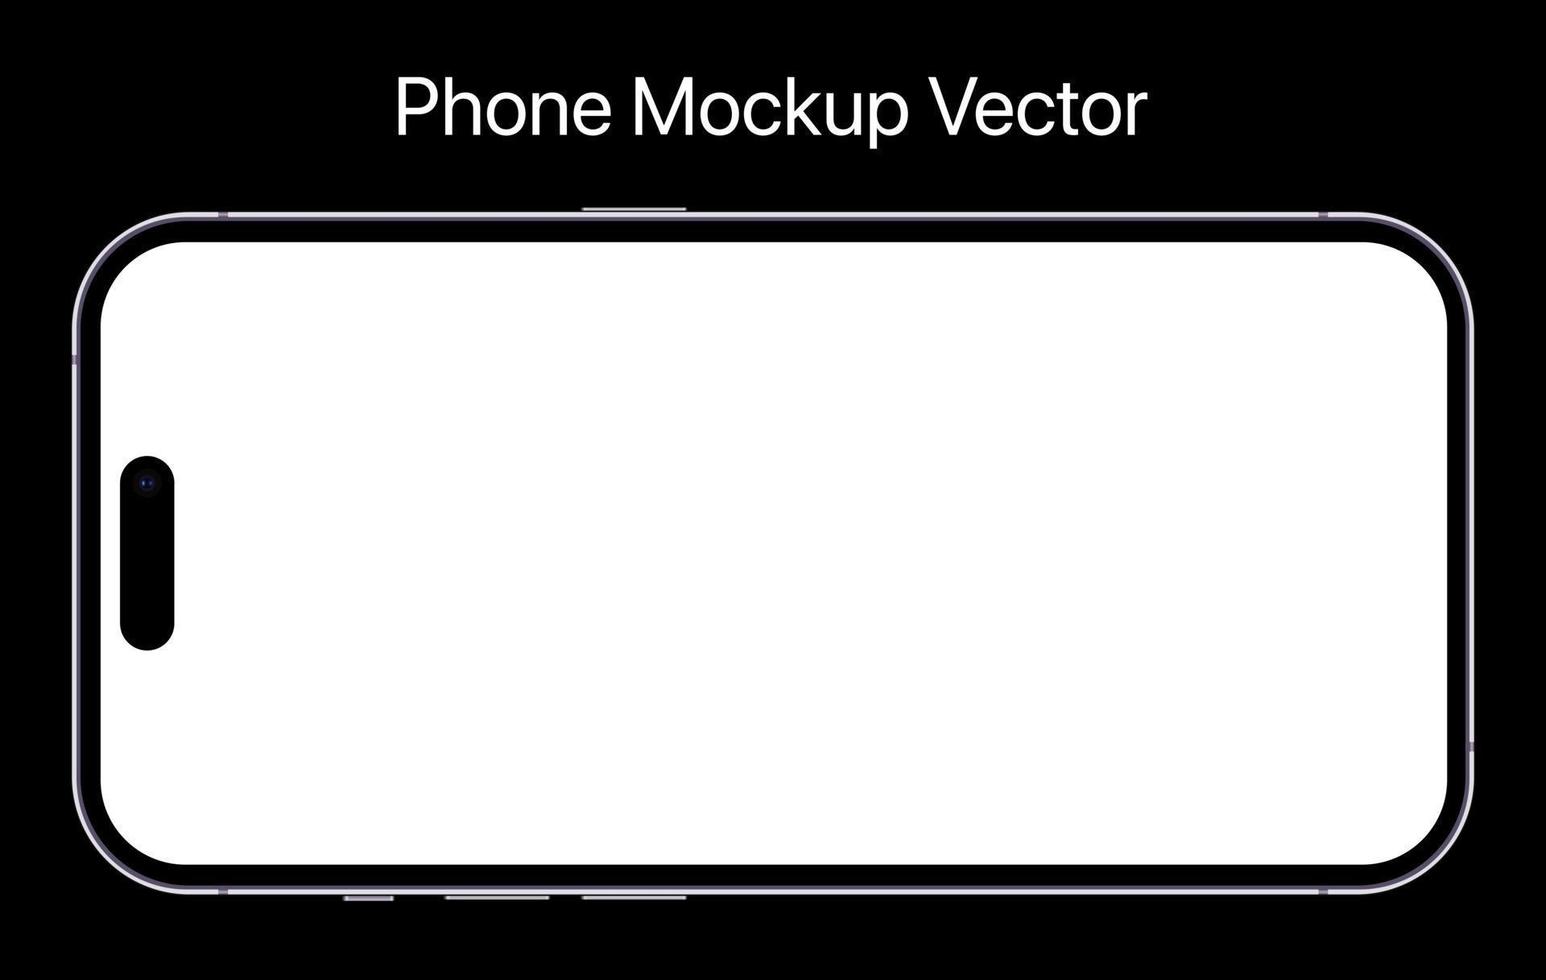 phone pro mockup smartphone mobile vector illustration aislado en el fondo con una pantalla en blanco